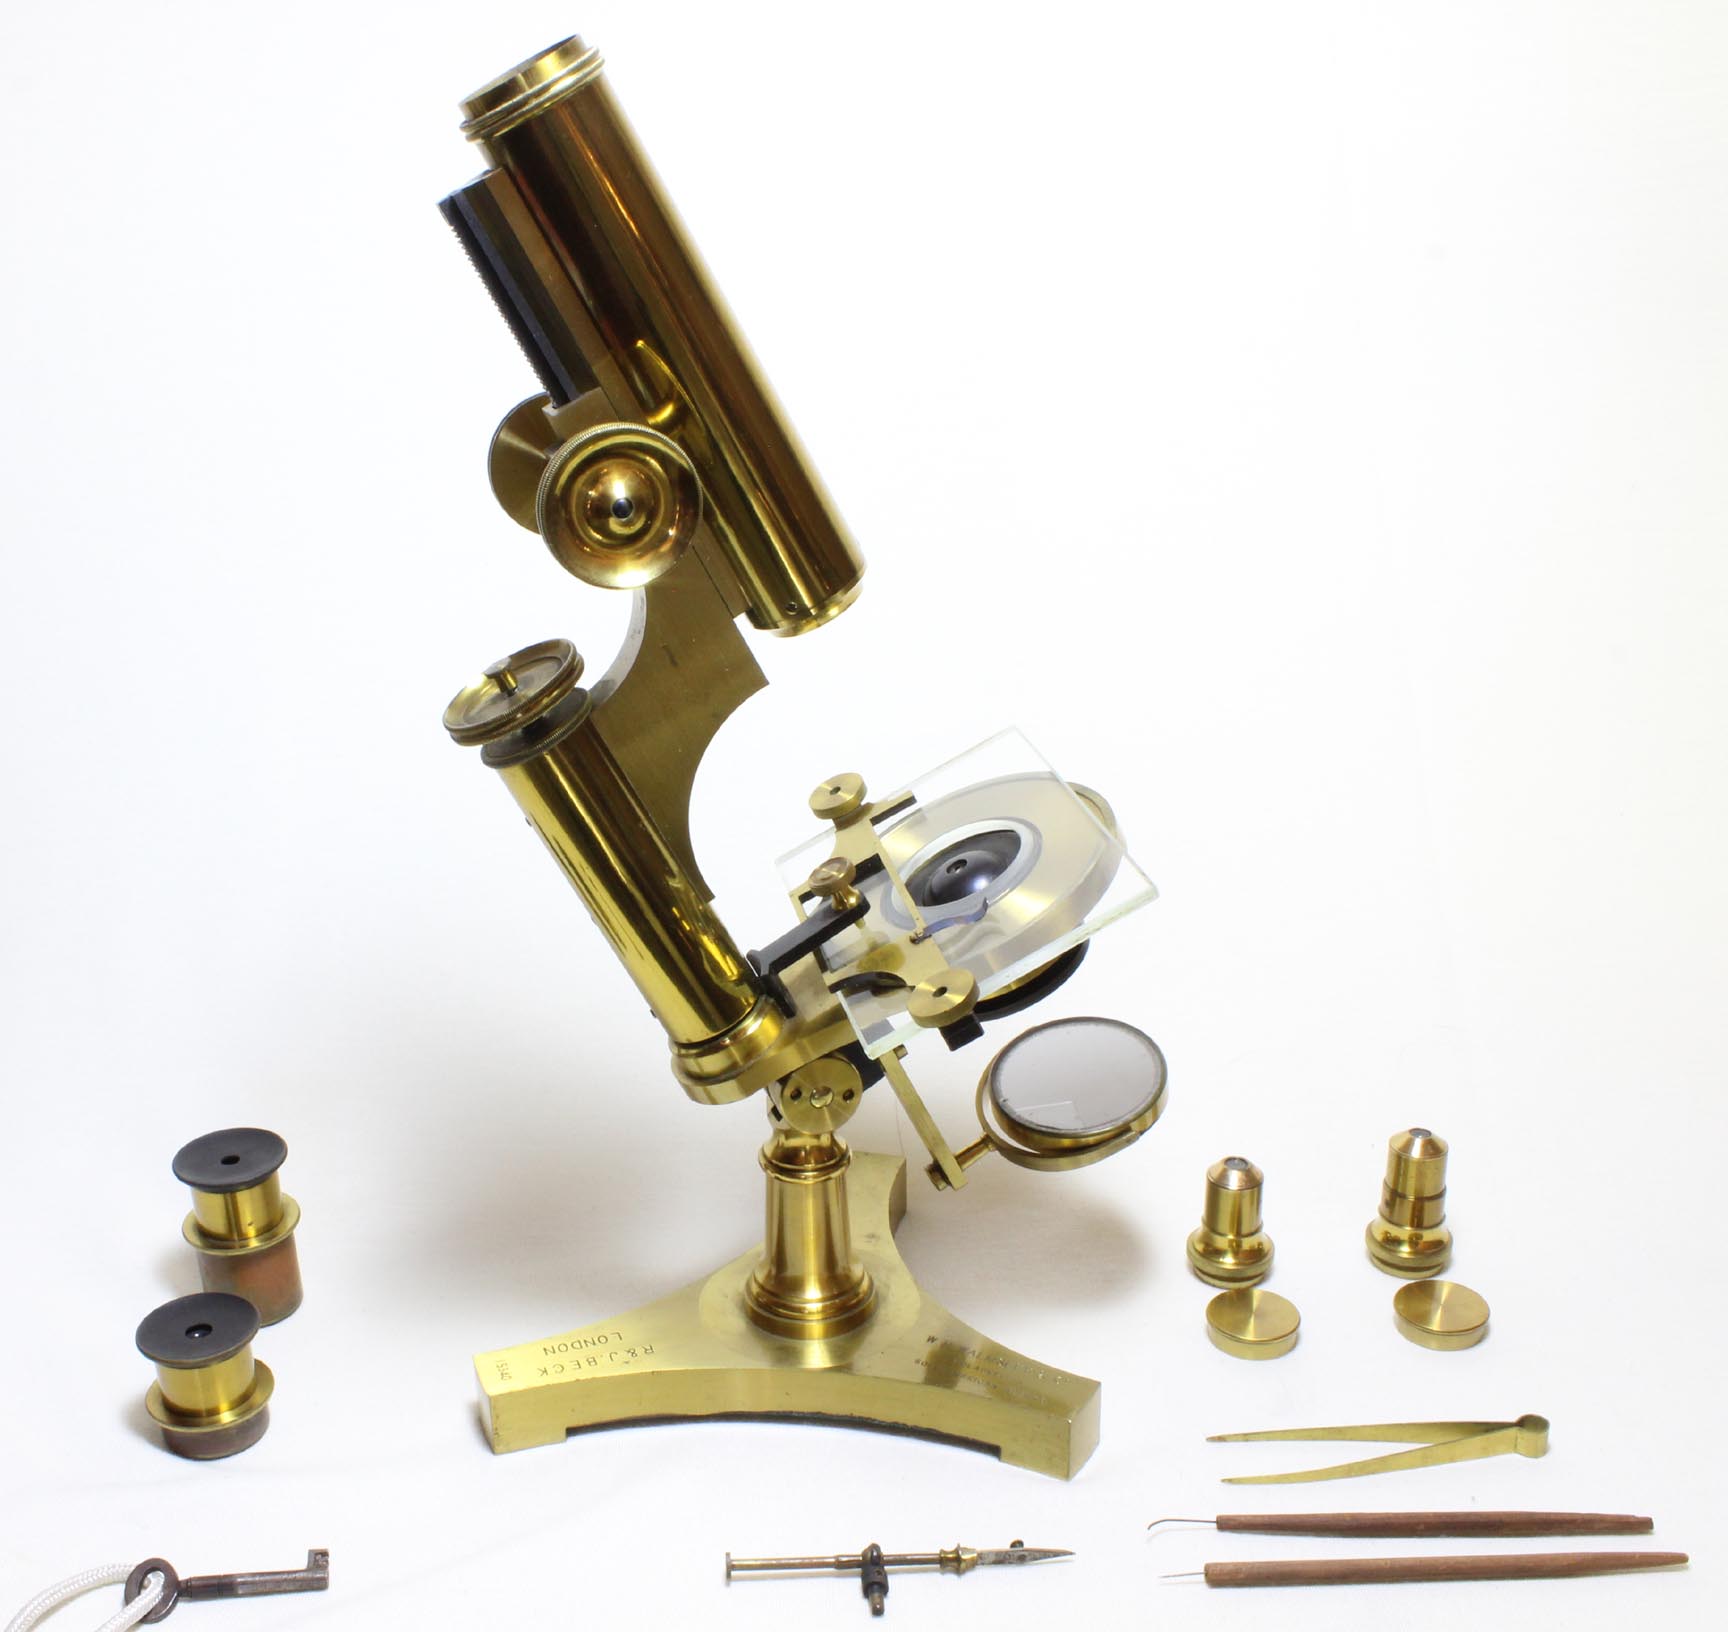 Beck Economic microscope